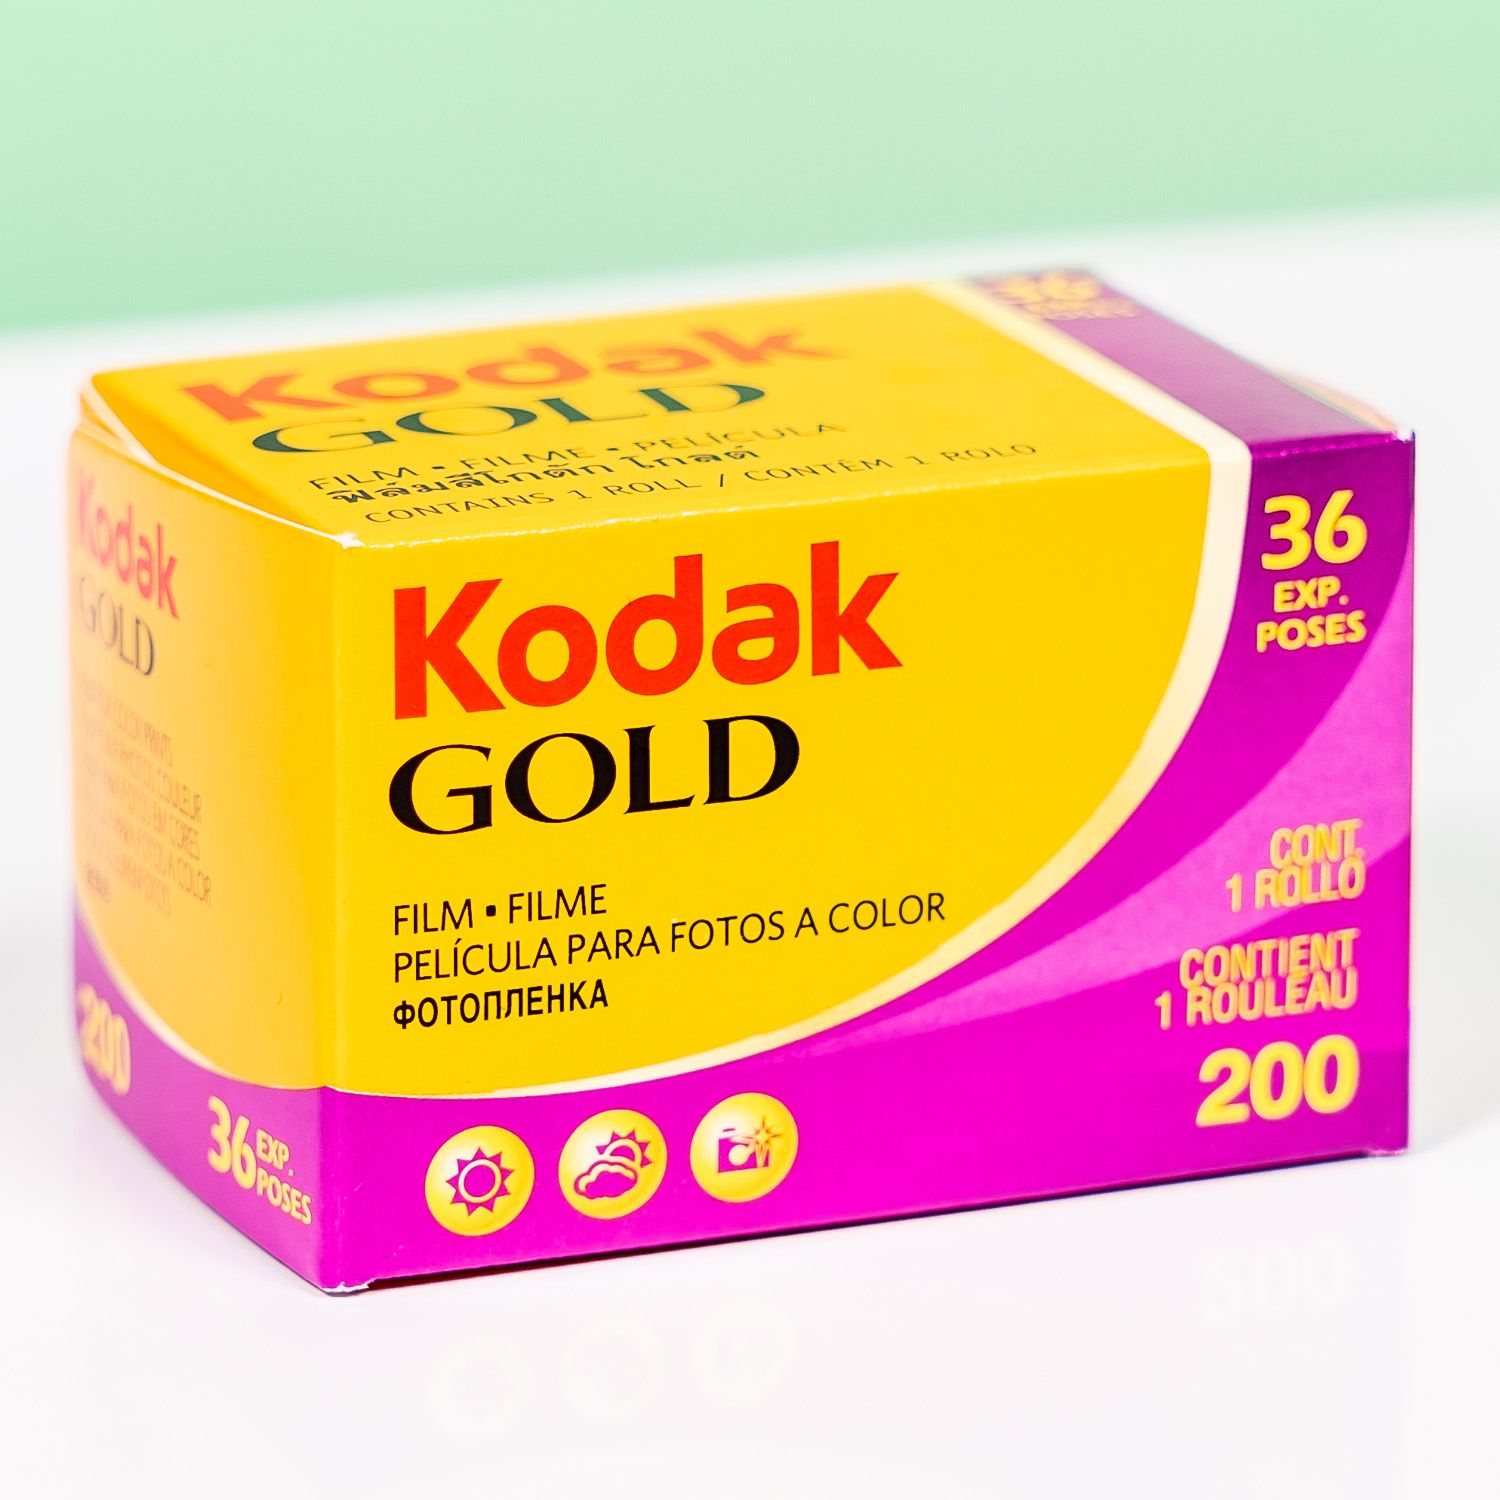 Новая реклама фотоаппаратов Kodak | Пикабу